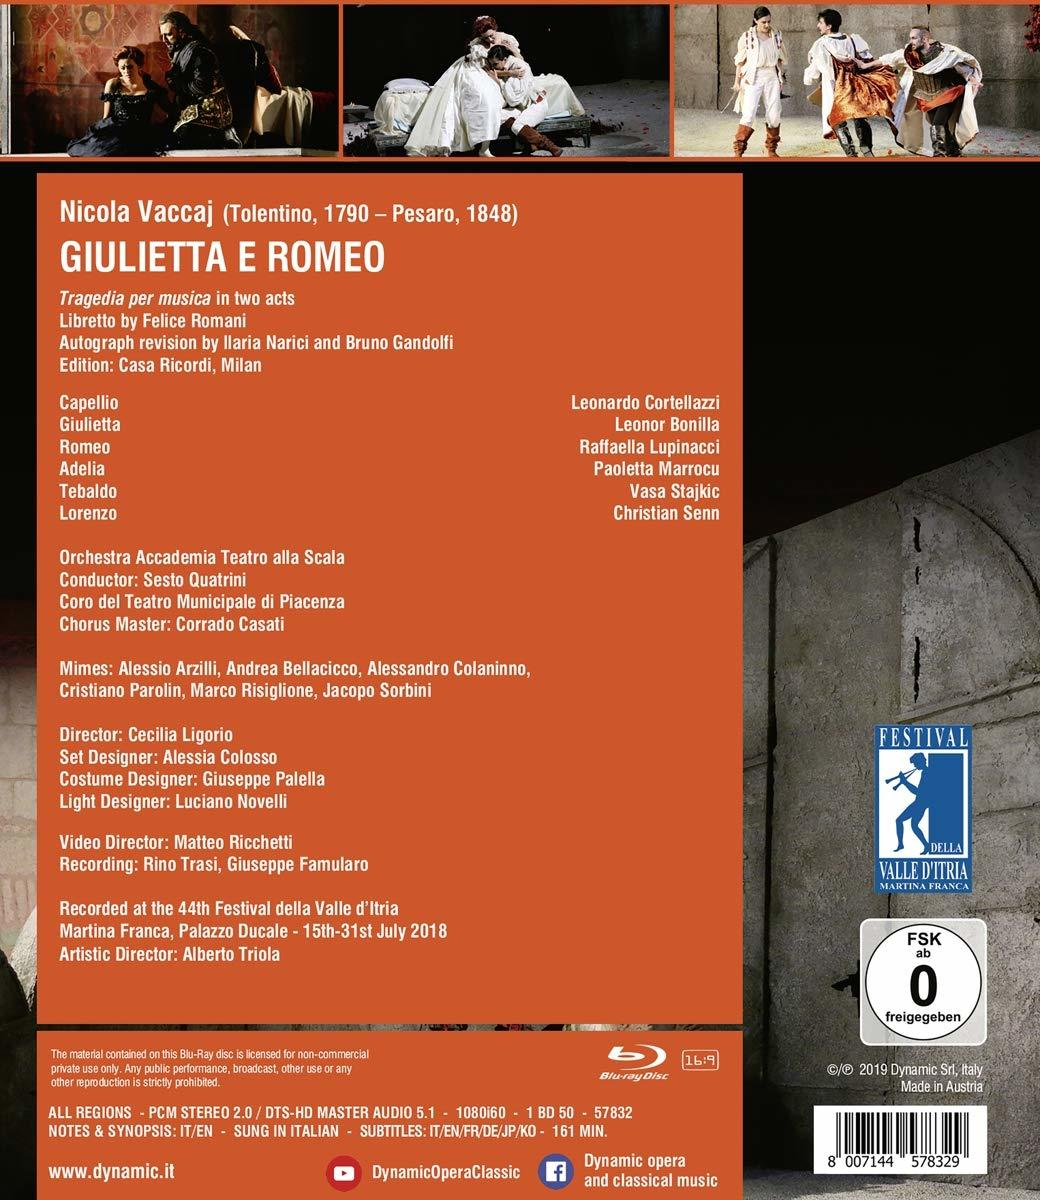 Raffaella Lupinacci, Orchestra - Leonor (Blu-ray) e - Romeo Teatro Accademia, Bonilla Alla Scala, Giulietta